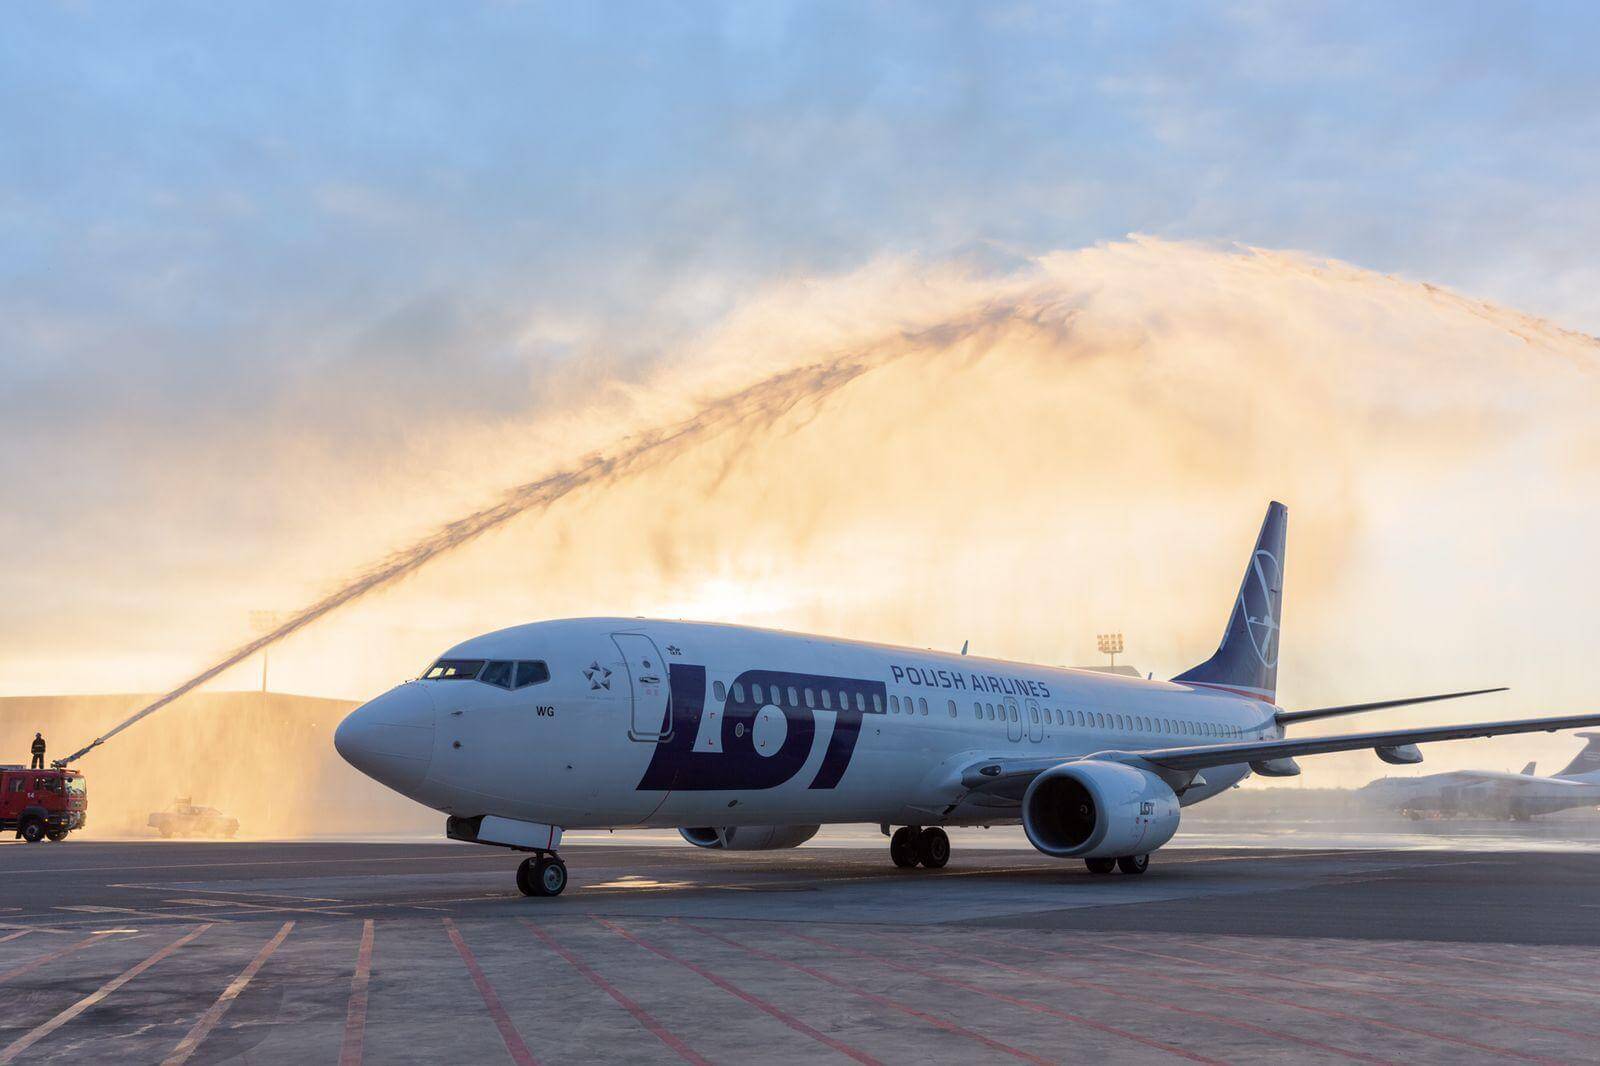 Bakı aeroportu “LOT” aviaşirkətinin ilk reysini qəbul edib